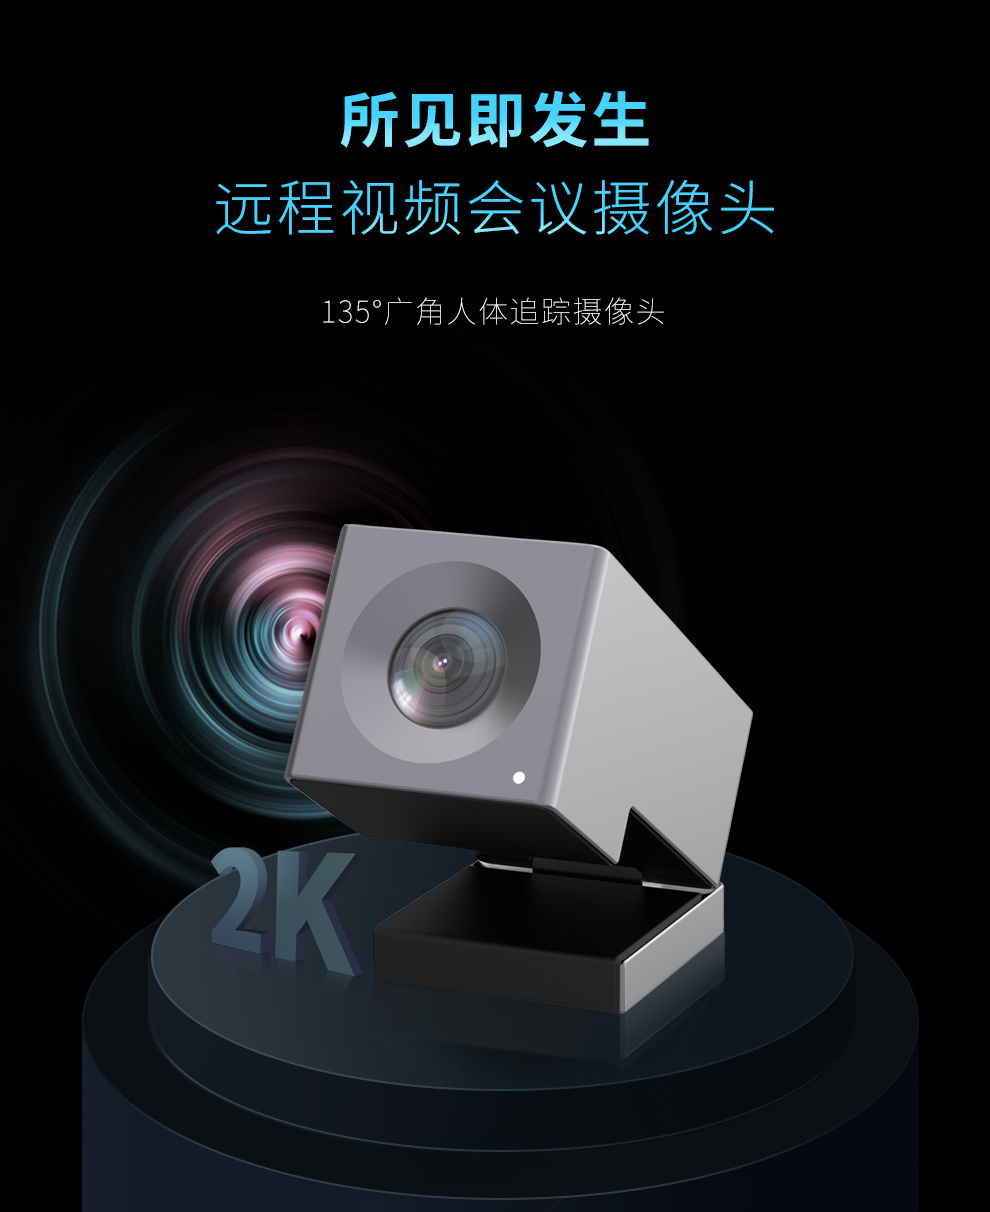 耳目达V20远程视频会议摄像机2K高清无线网络摄像头(图1)